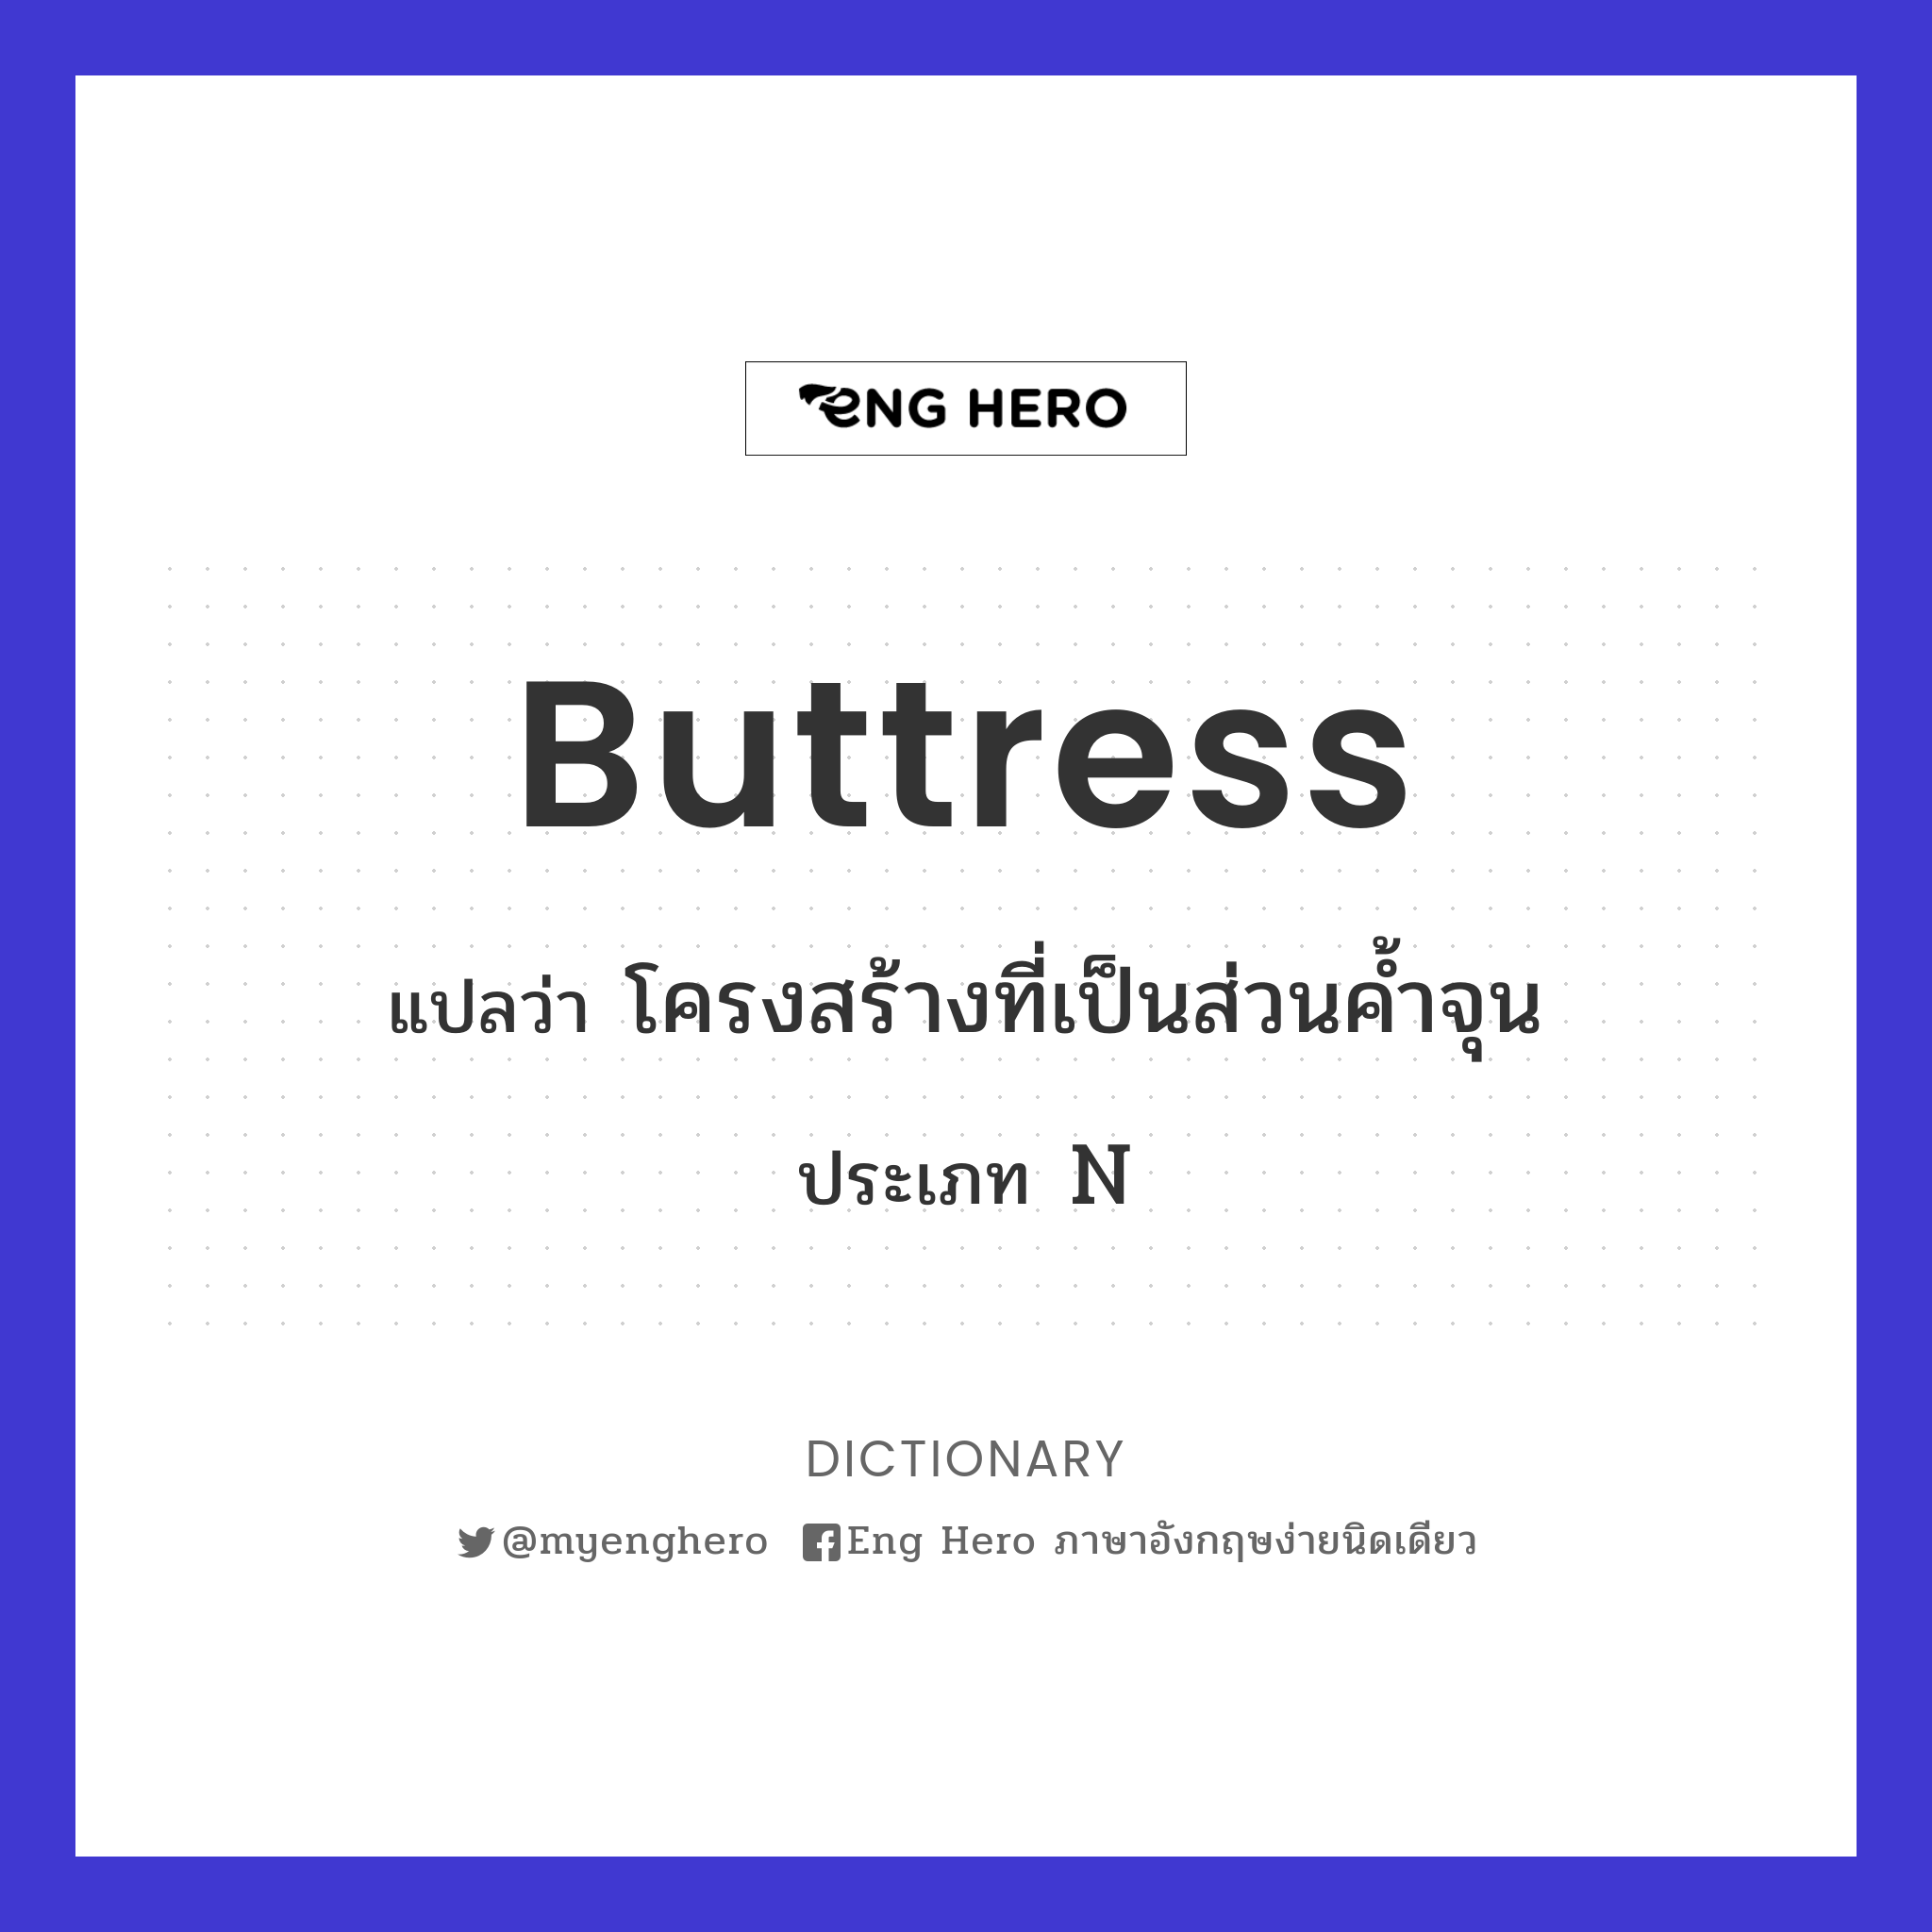 buttress